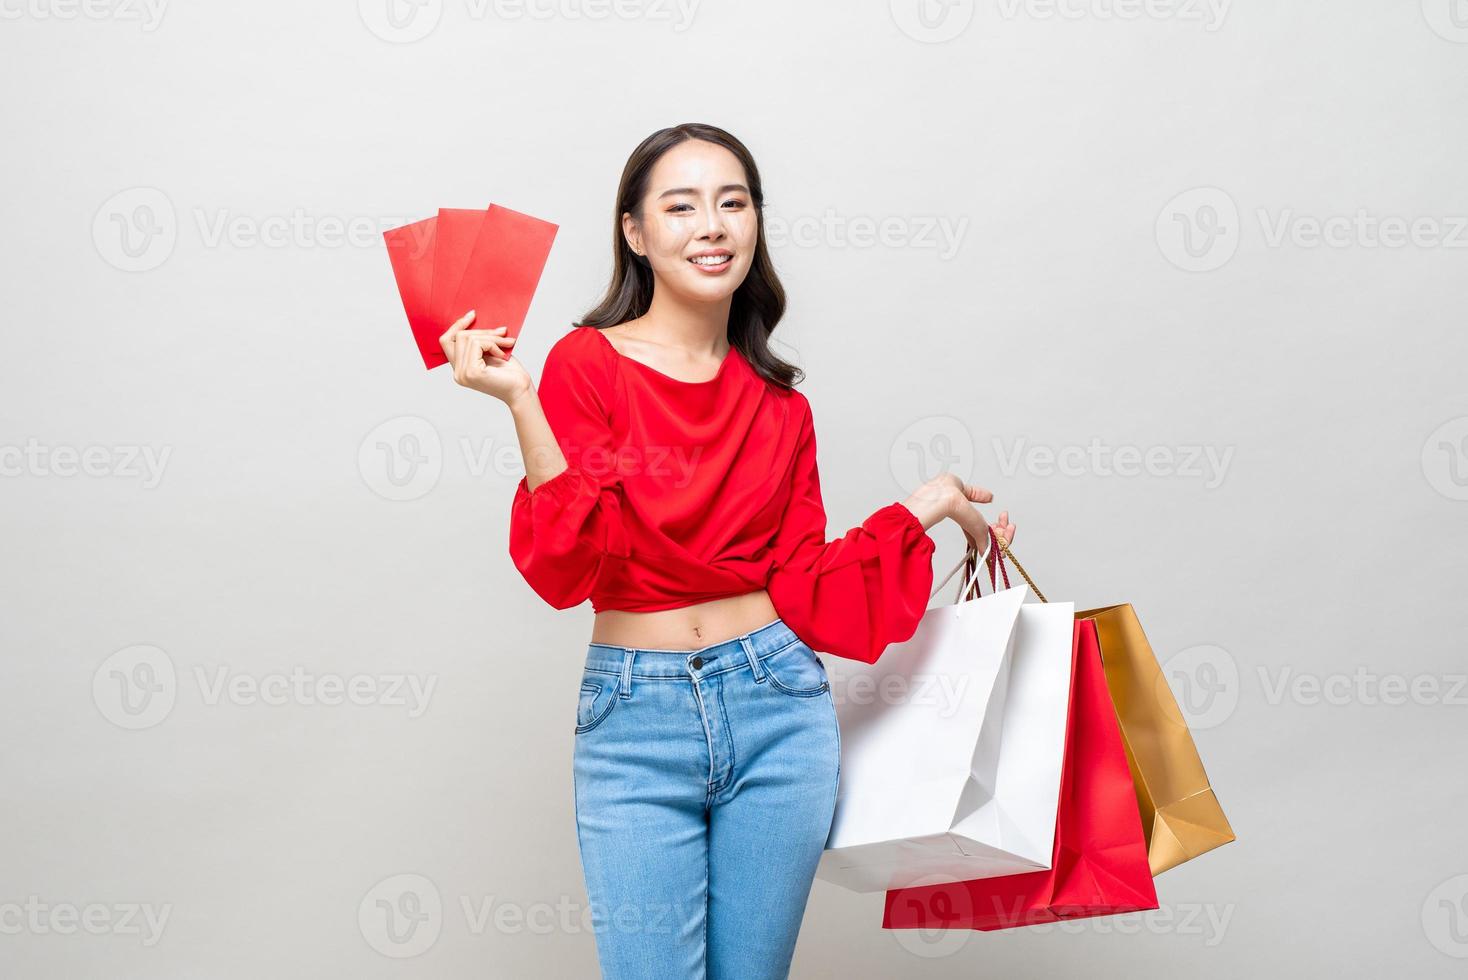 Gelukkige Aziatische vrouw met boodschappentassen en rode enveloppen of ang pao geïsoleerd in lichtgrijze studio achtergrond voor Chinees Nieuwjaar verkoop concept foto